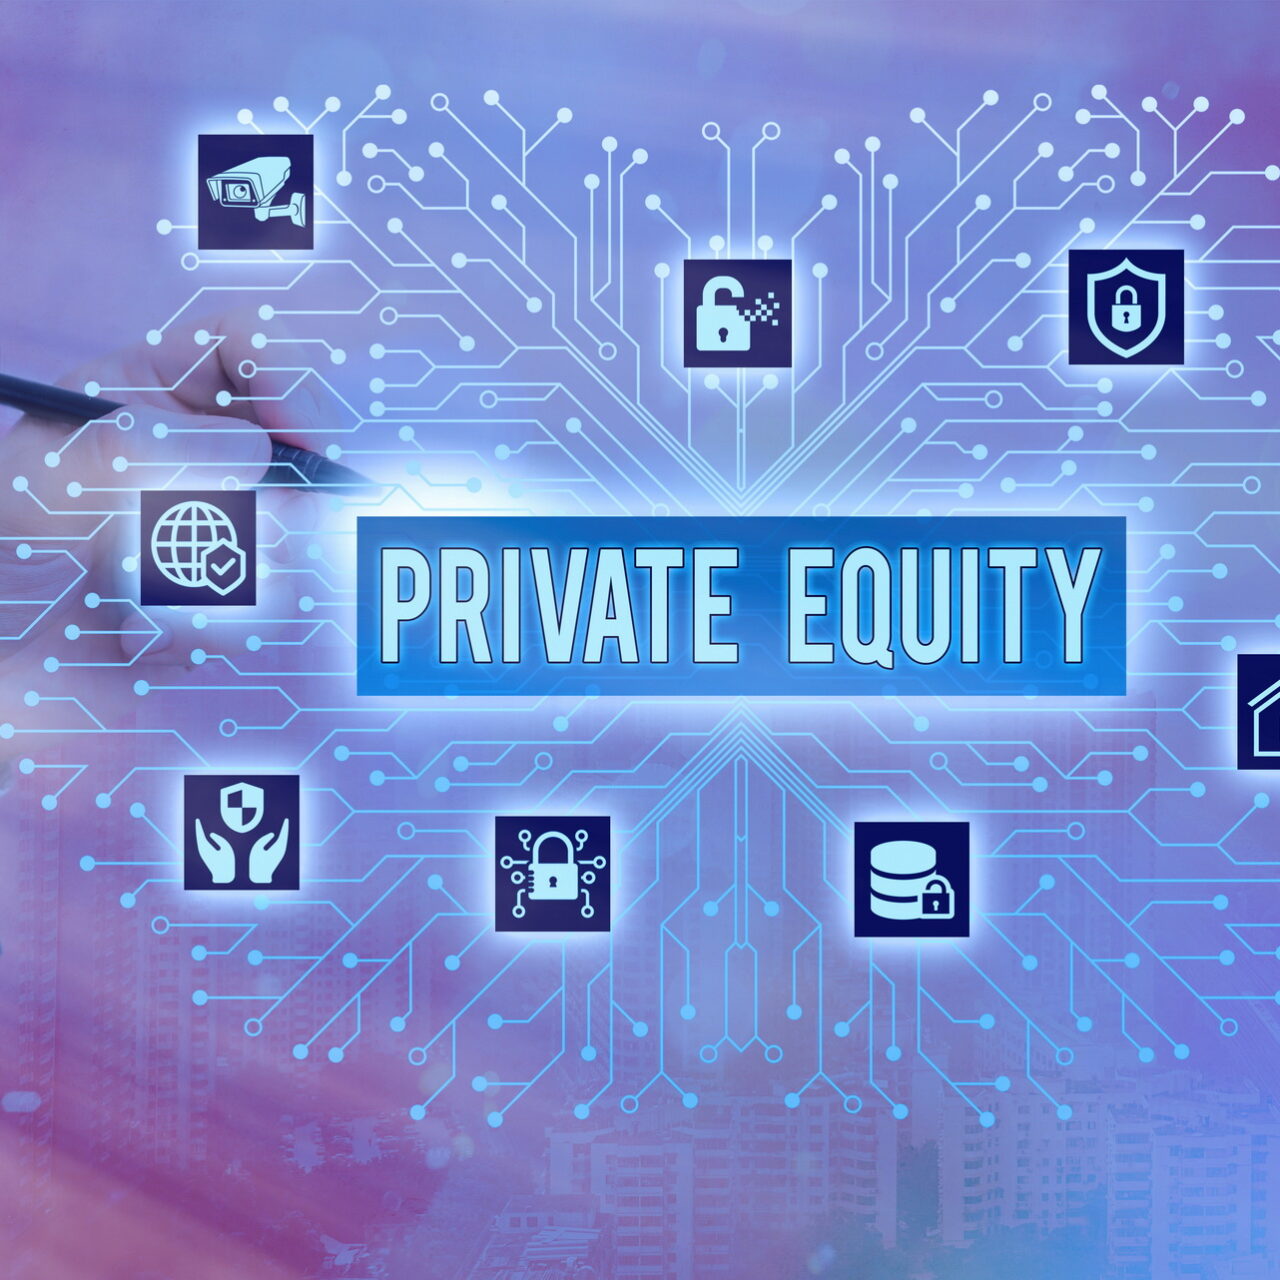 Private-Equity-Branche auf der Überholspur